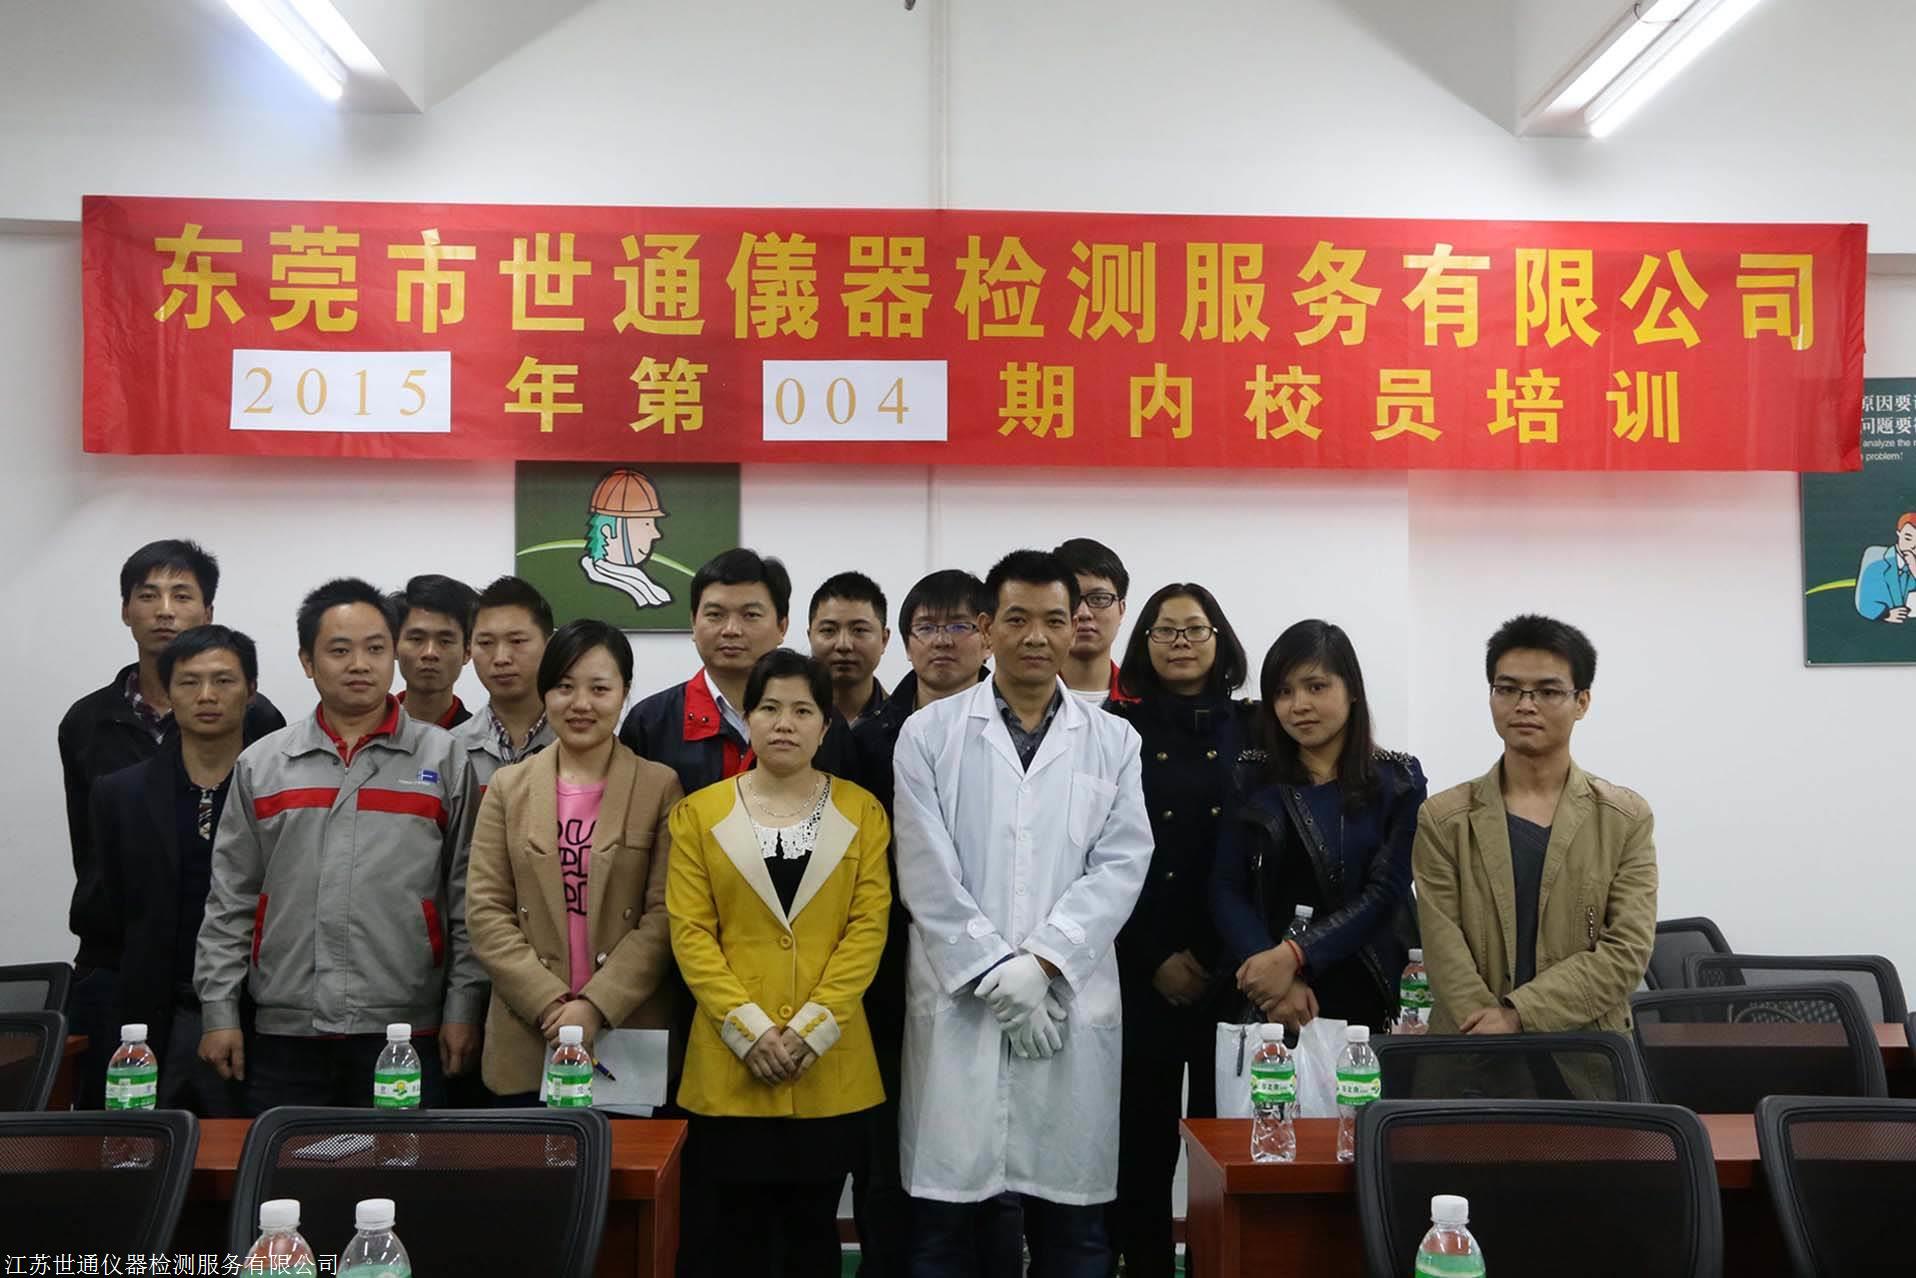 上海祝桥仪器校准第三方实验室